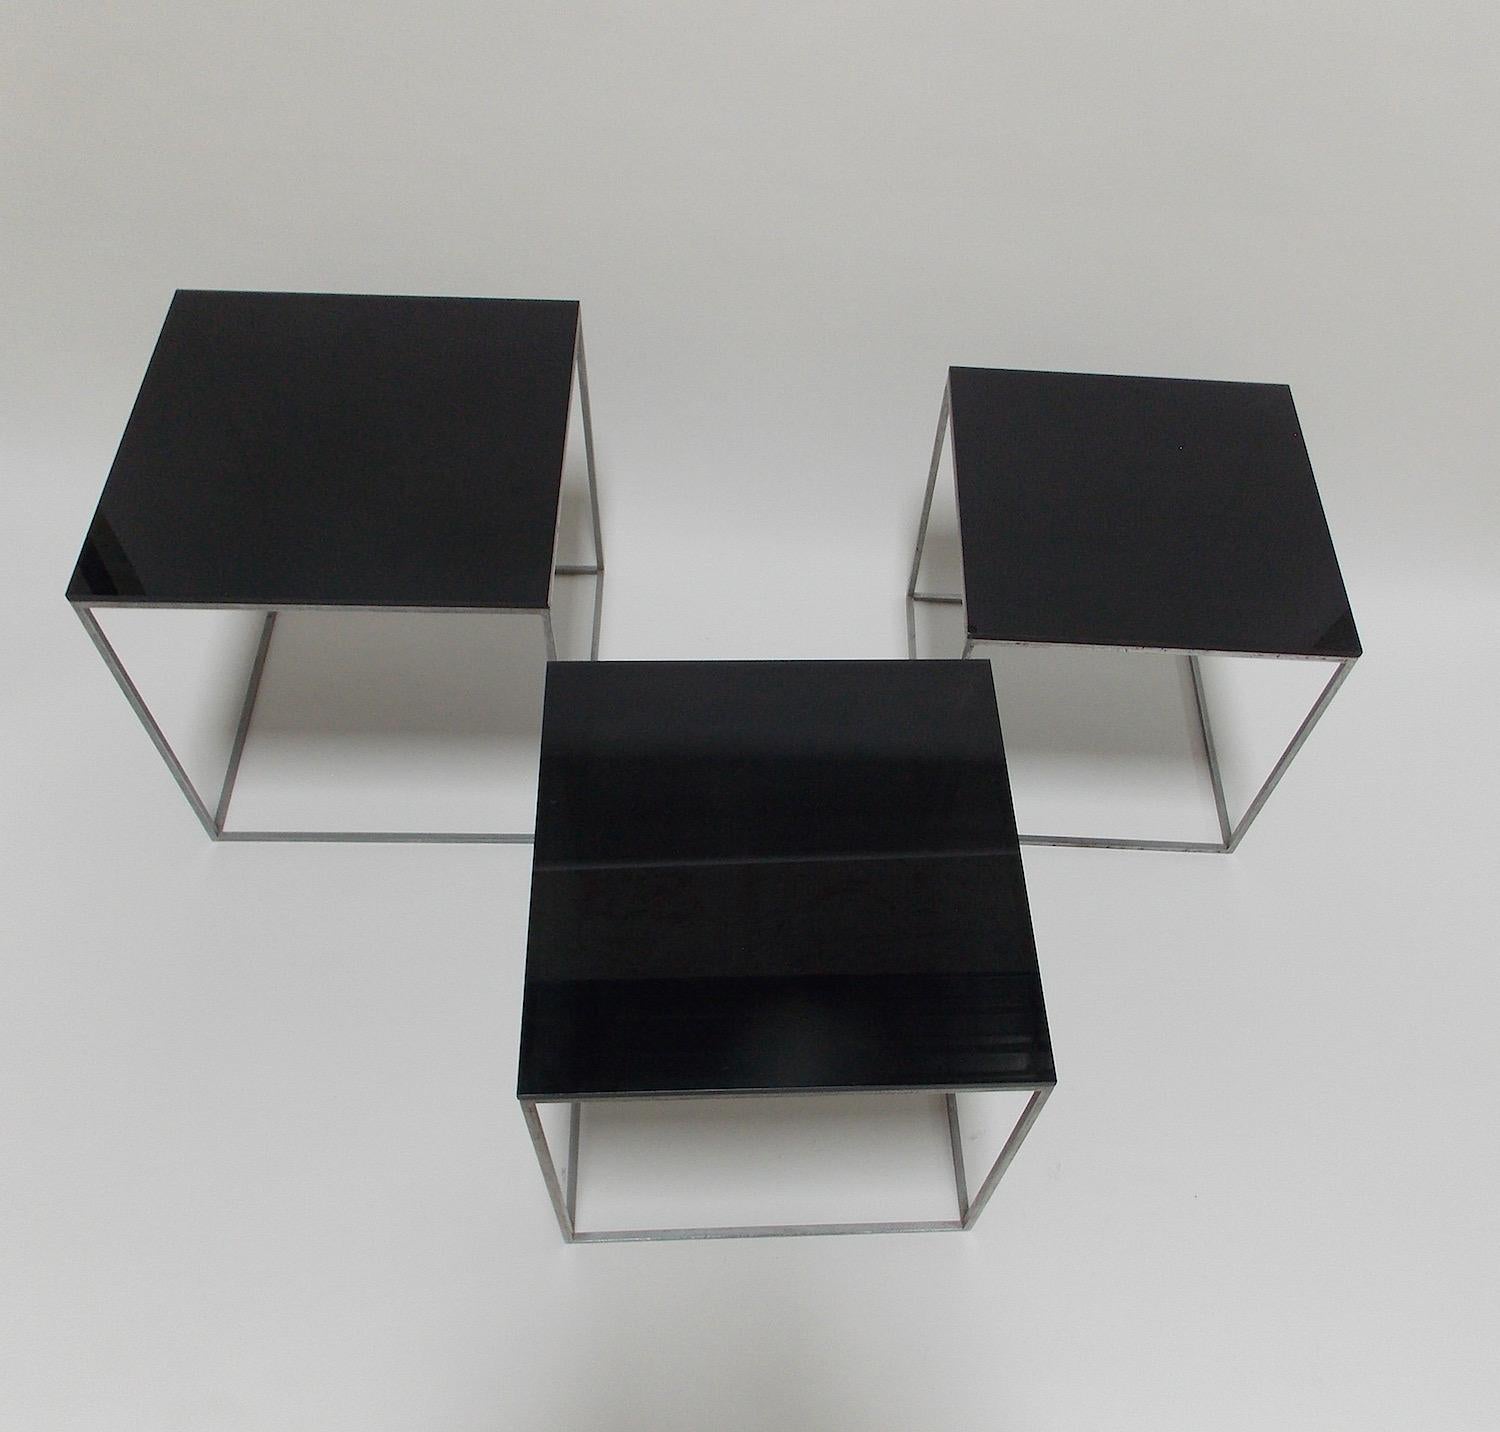 Un ensemble de 3 tables PK71.
Surface originale en acier mat avec des plateaux en acrylique insérés.